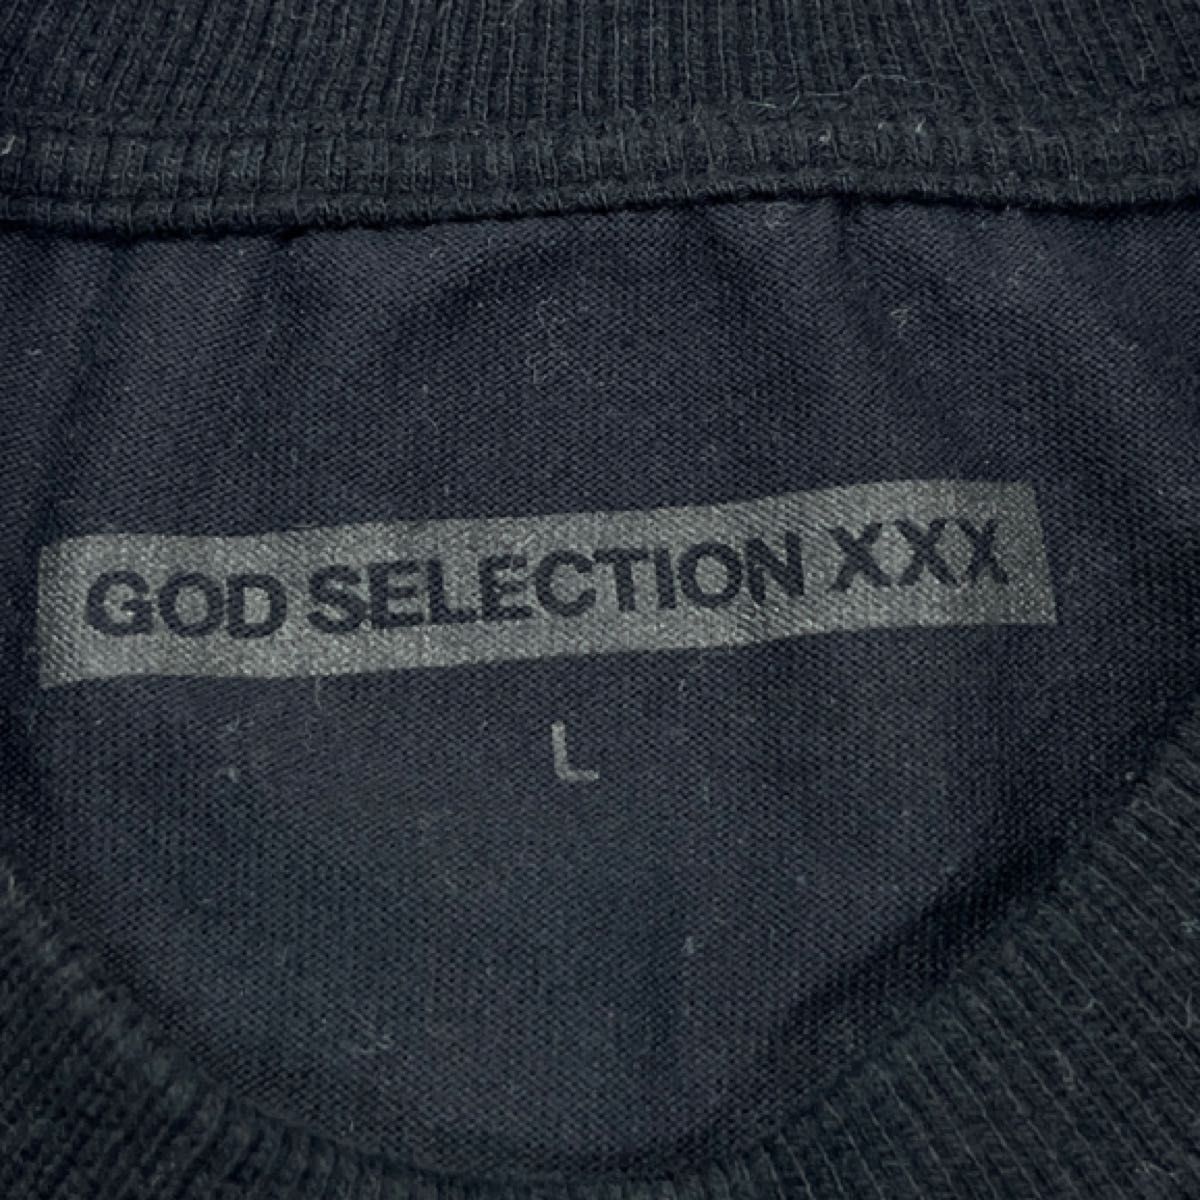 初期 GOD SELECTION XXX TOUR Tシャツ METALLICA メタリカ ゴッドセレクション ツアーTシャツ